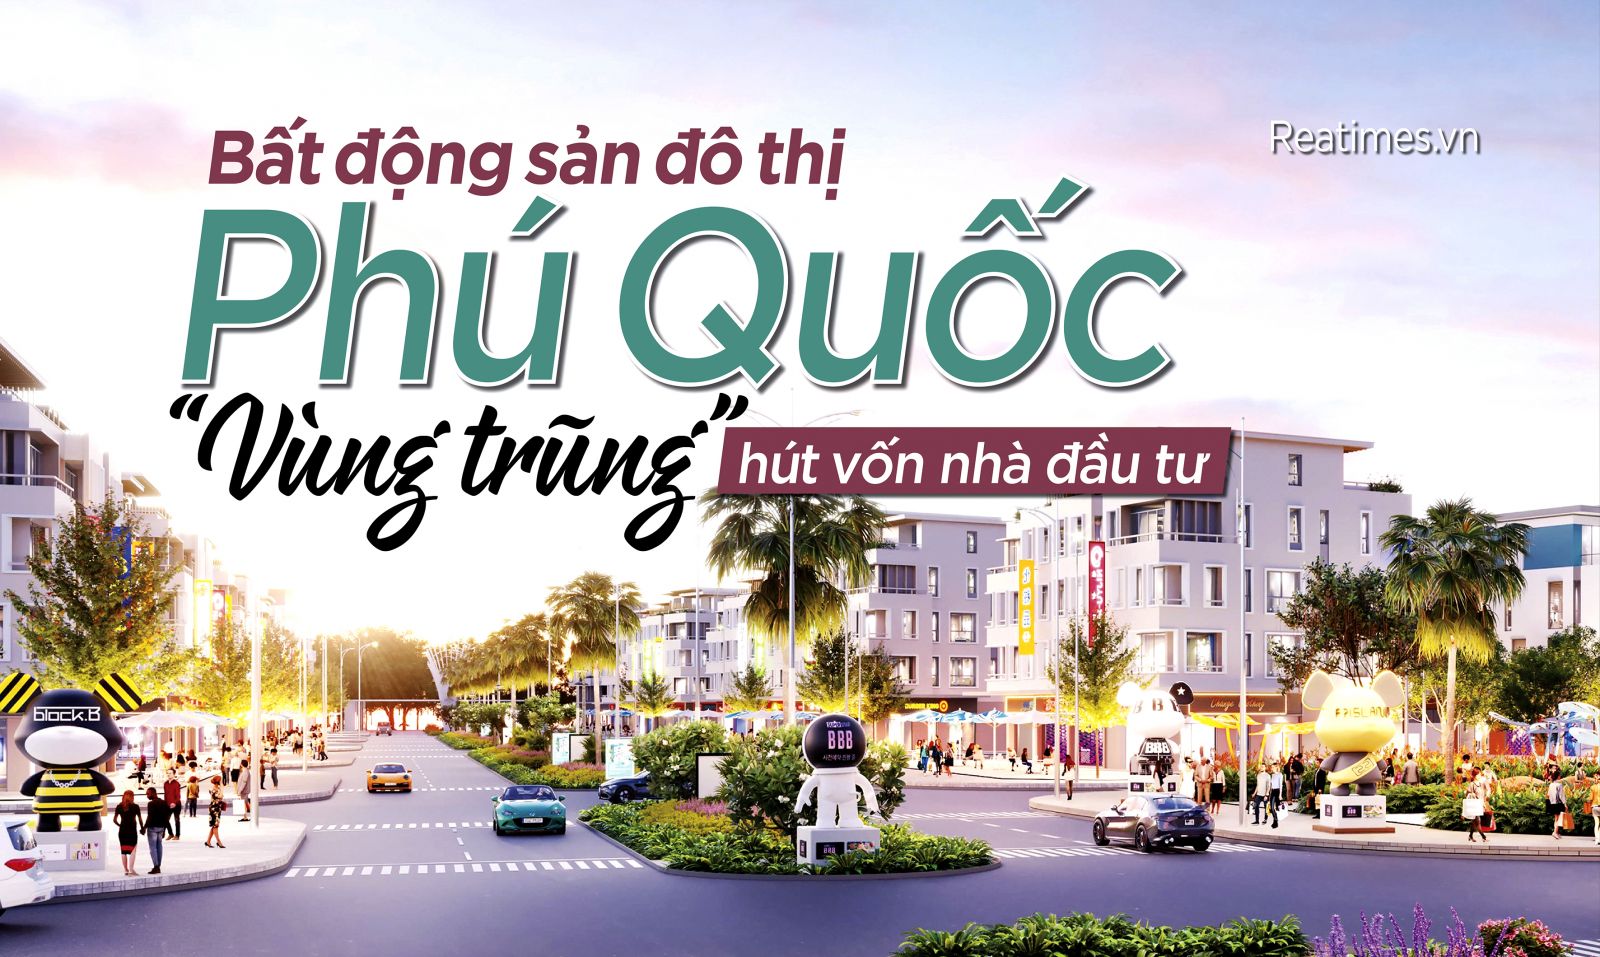 Bất động sản đô thị Phú Quốc: “Vùng trũng” hút vốn đầu tư